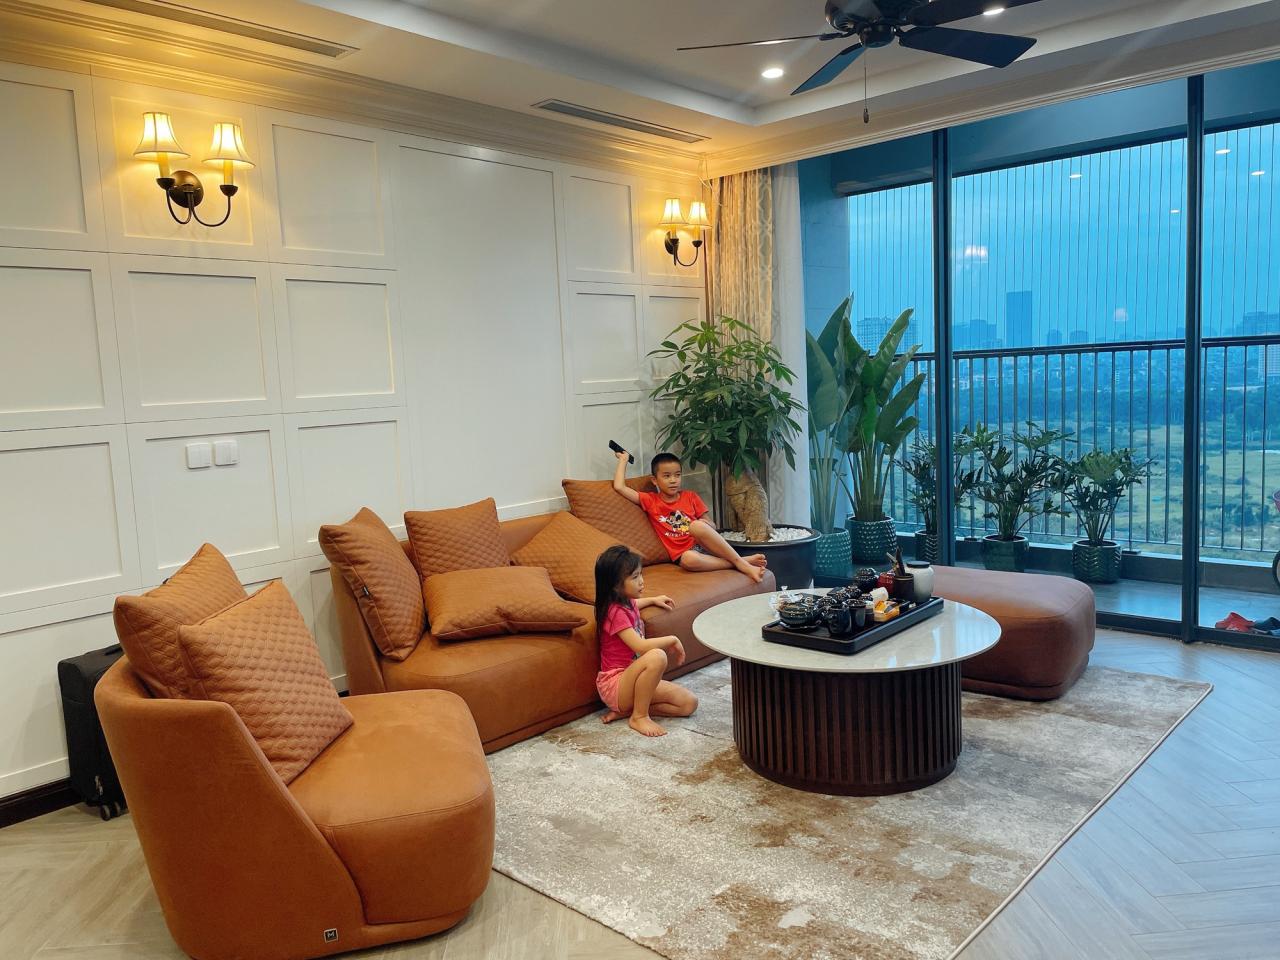 Nữ kiến trúc sư tại Hà Nội chia sẻ kinh nghiệm chọn mua nhà chung cư hoàn hảo hơn - Ảnh 2.